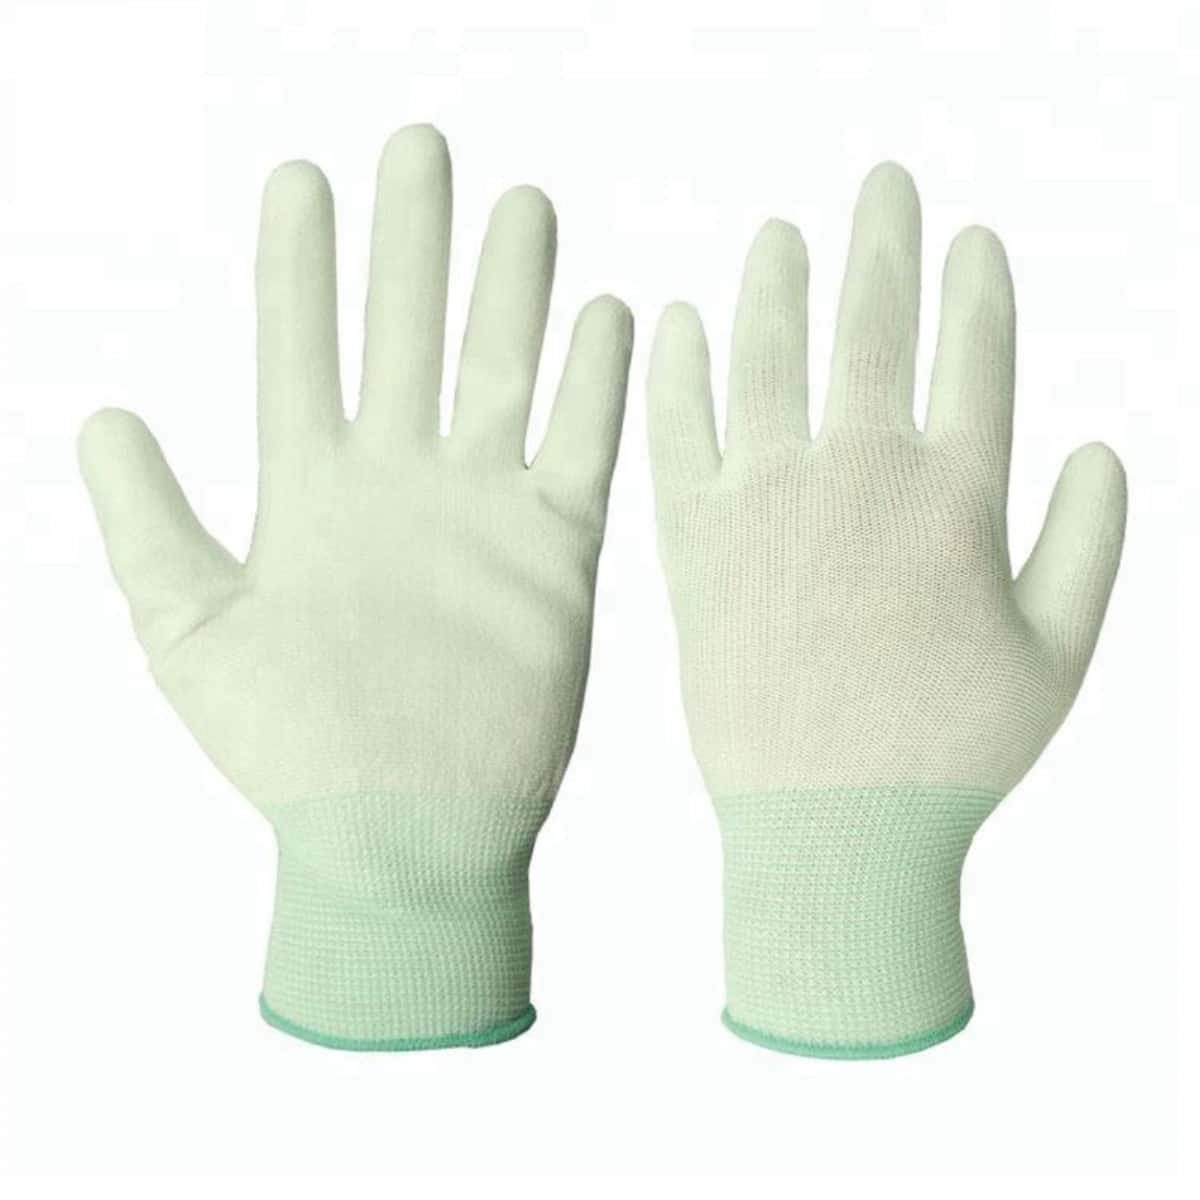 Рабочие перчатки из белого полиэстера 13 калибра с полиуретановым покрытием на ладонях